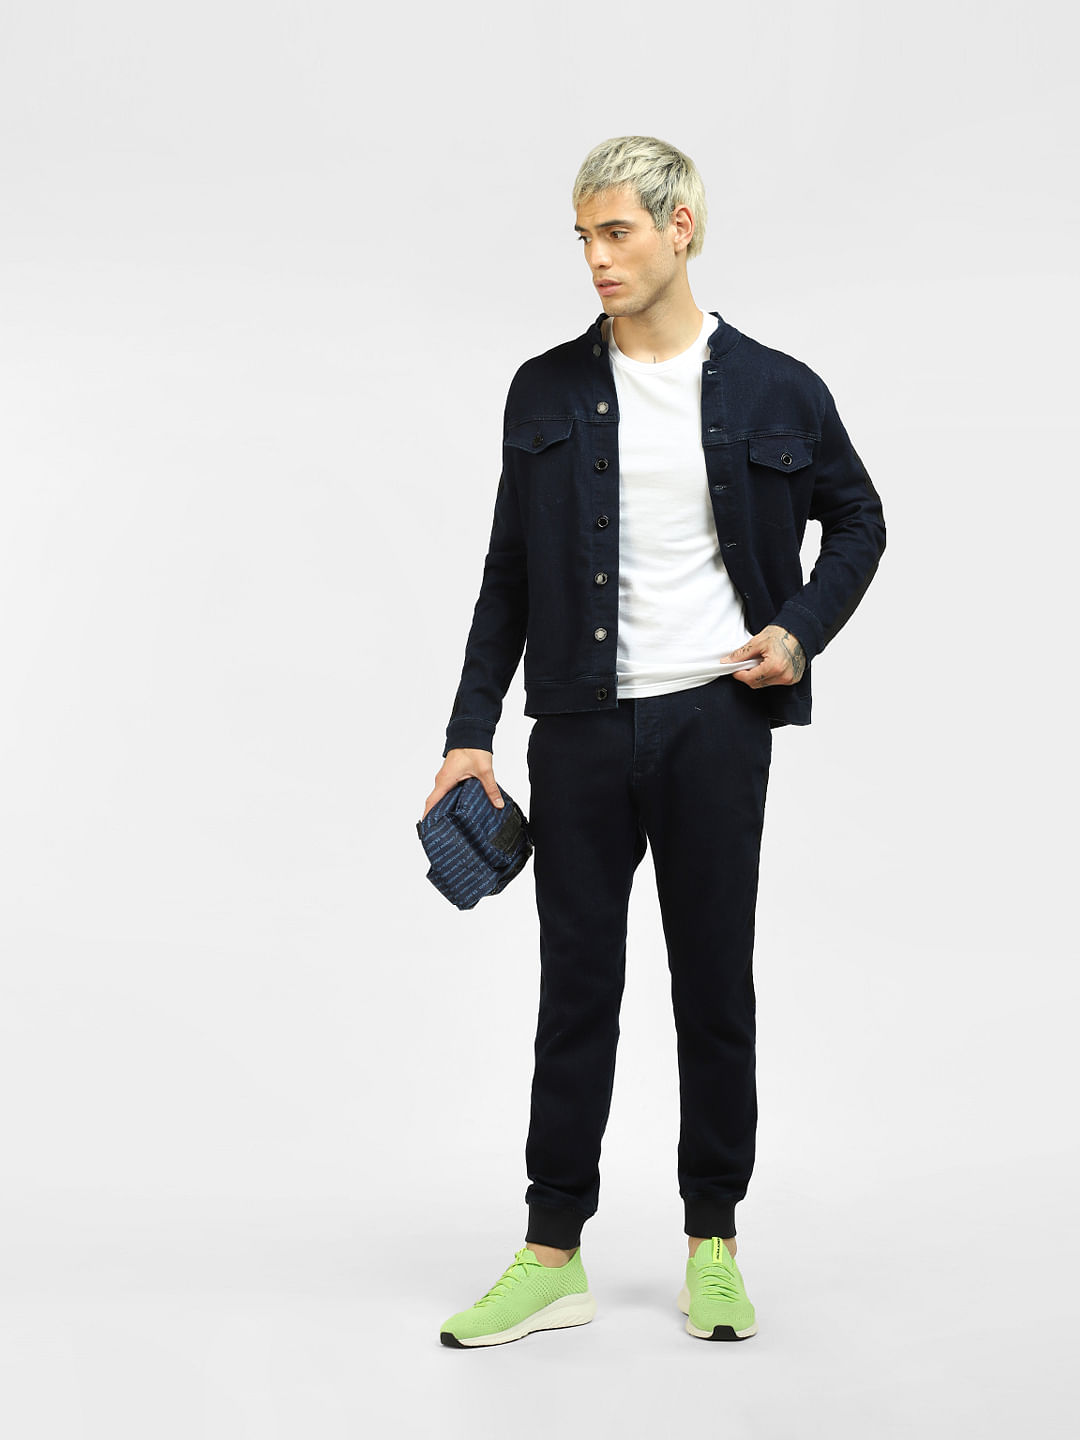 Buy Black Solid Slim Fit Trousers for Men Online at Killer Jeans  490790